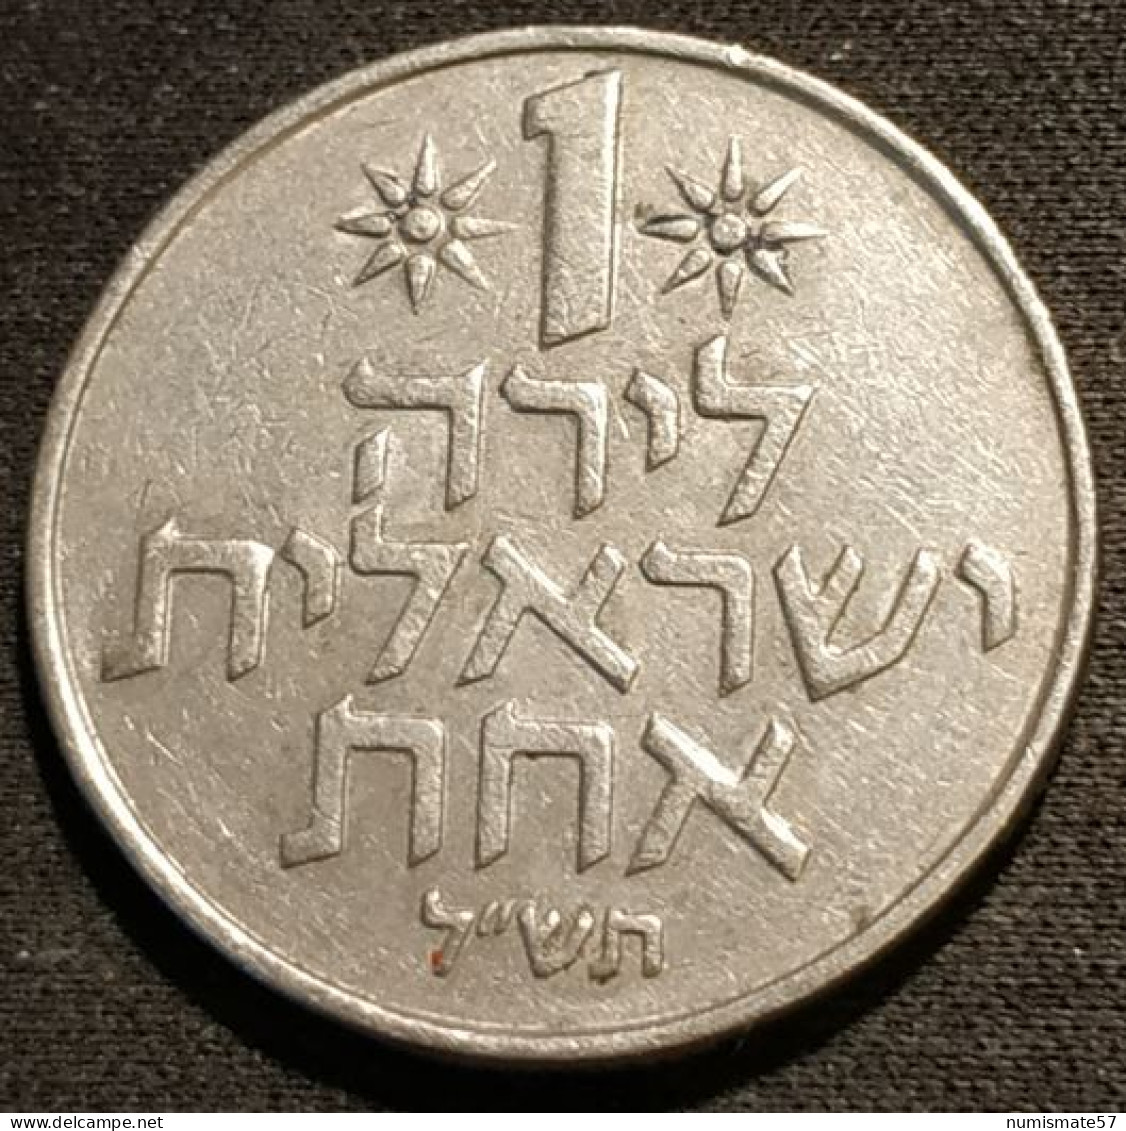 ISRAEL - 1 LIRA 1970 ( 5730 ) - KM 47.1 - Israel